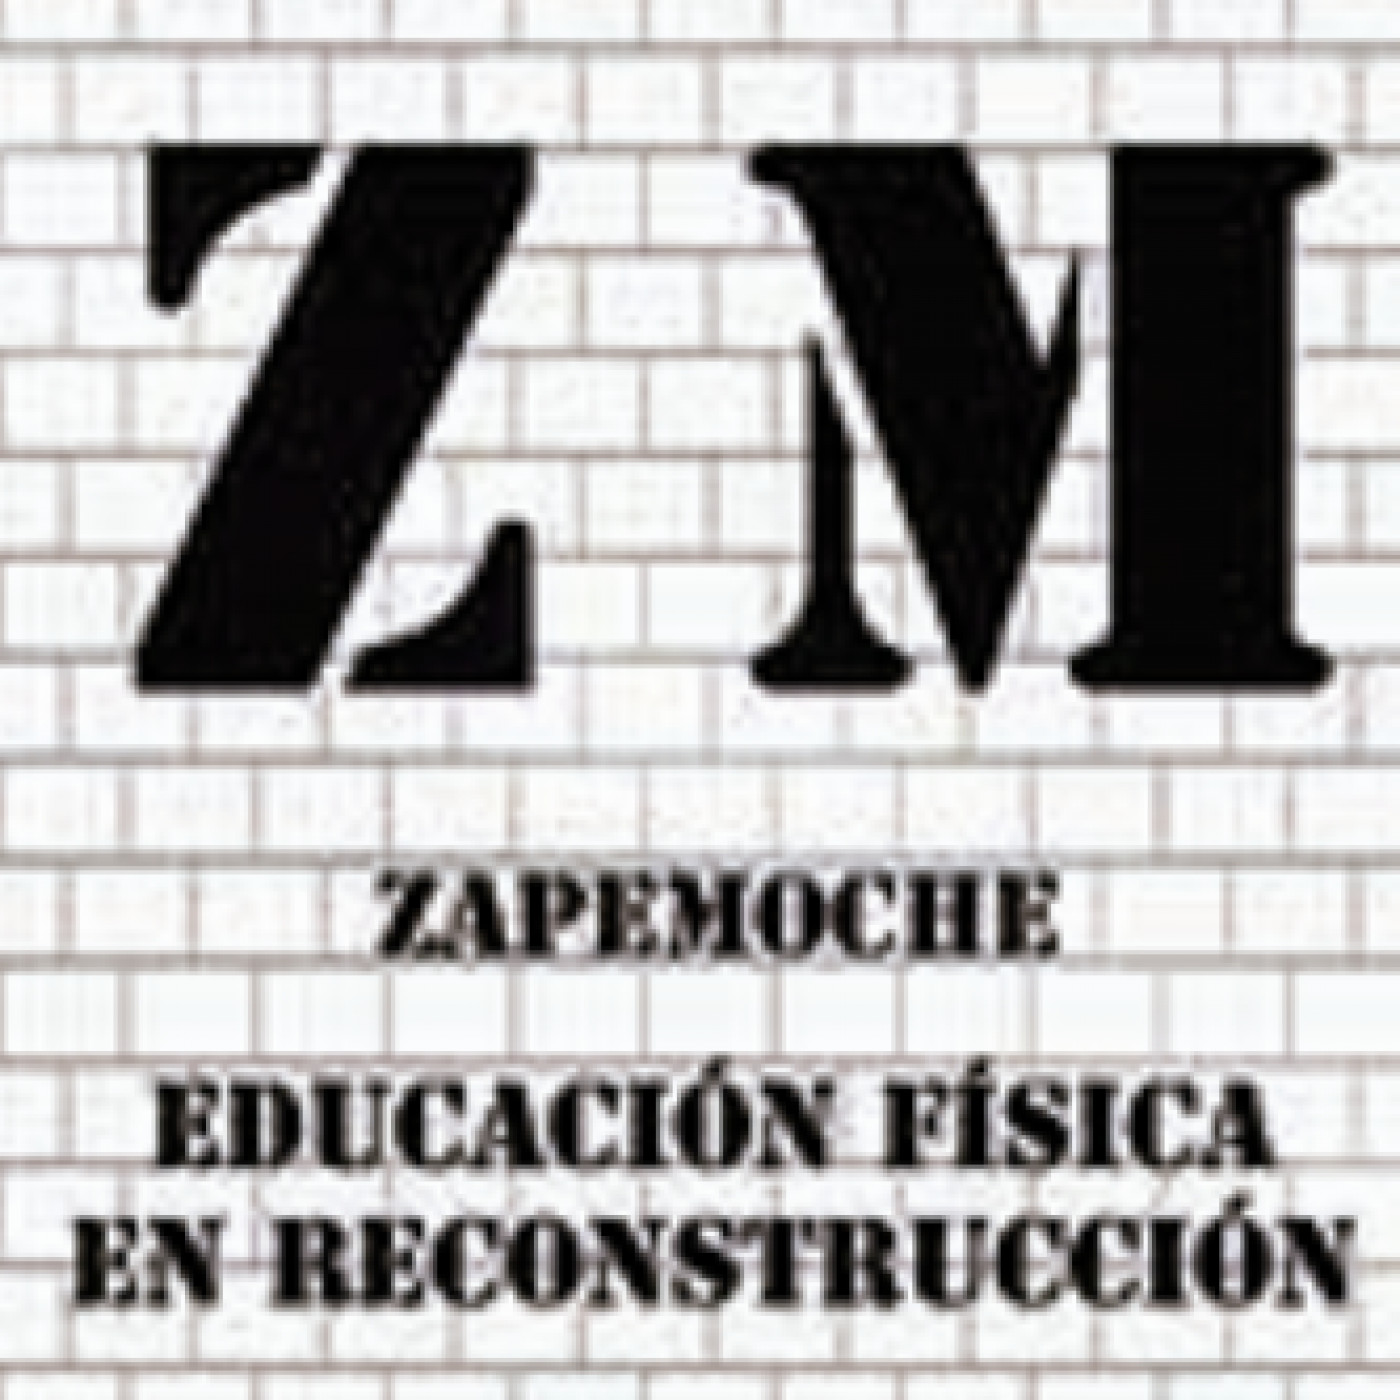 Zapemoche - Educación Física en reconstrucción